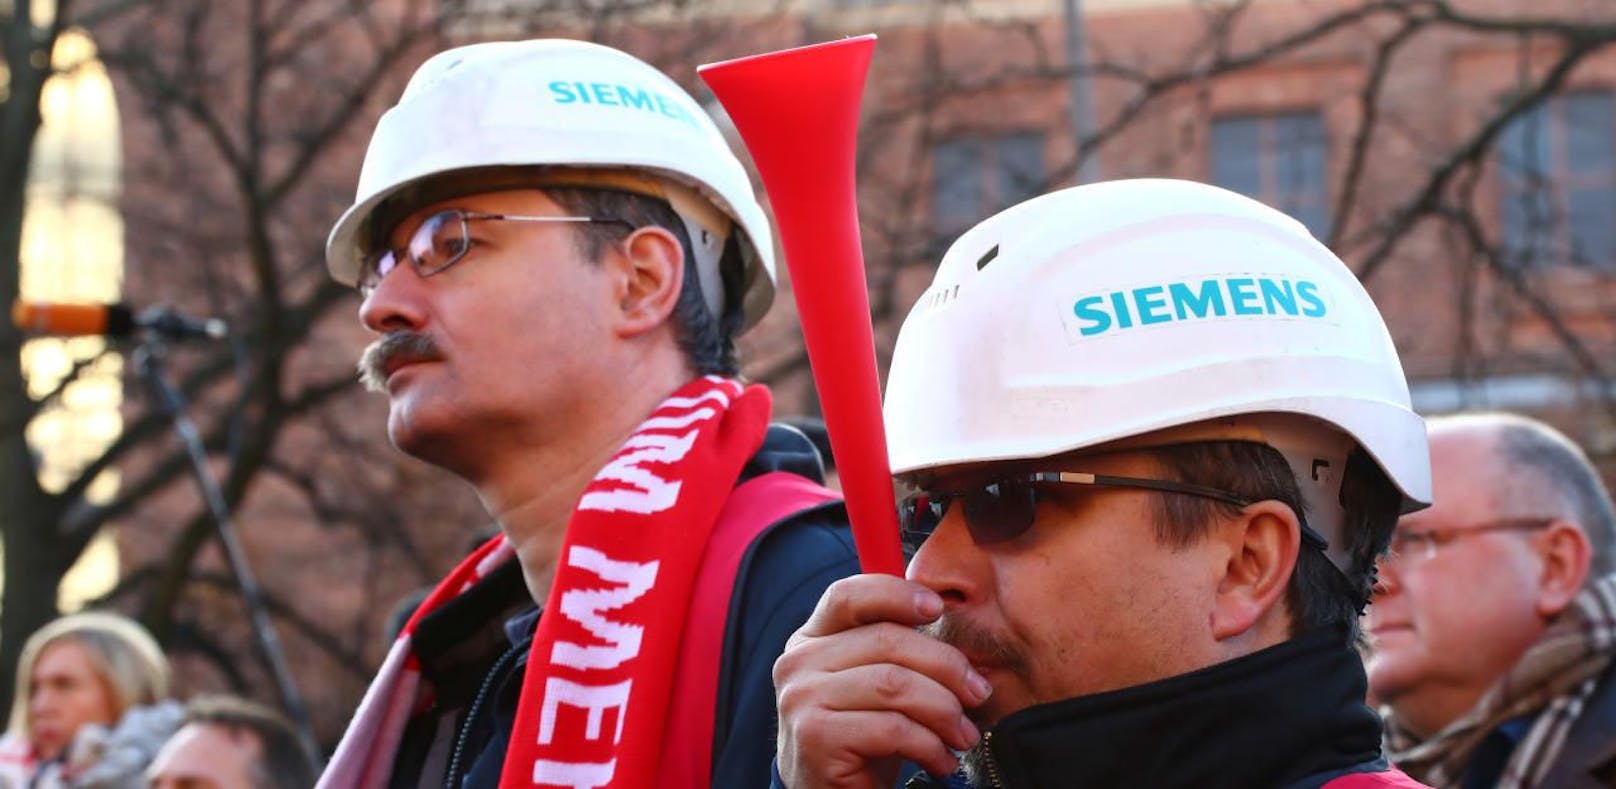 Massive Proteste gegen Siemens-Jobabbau